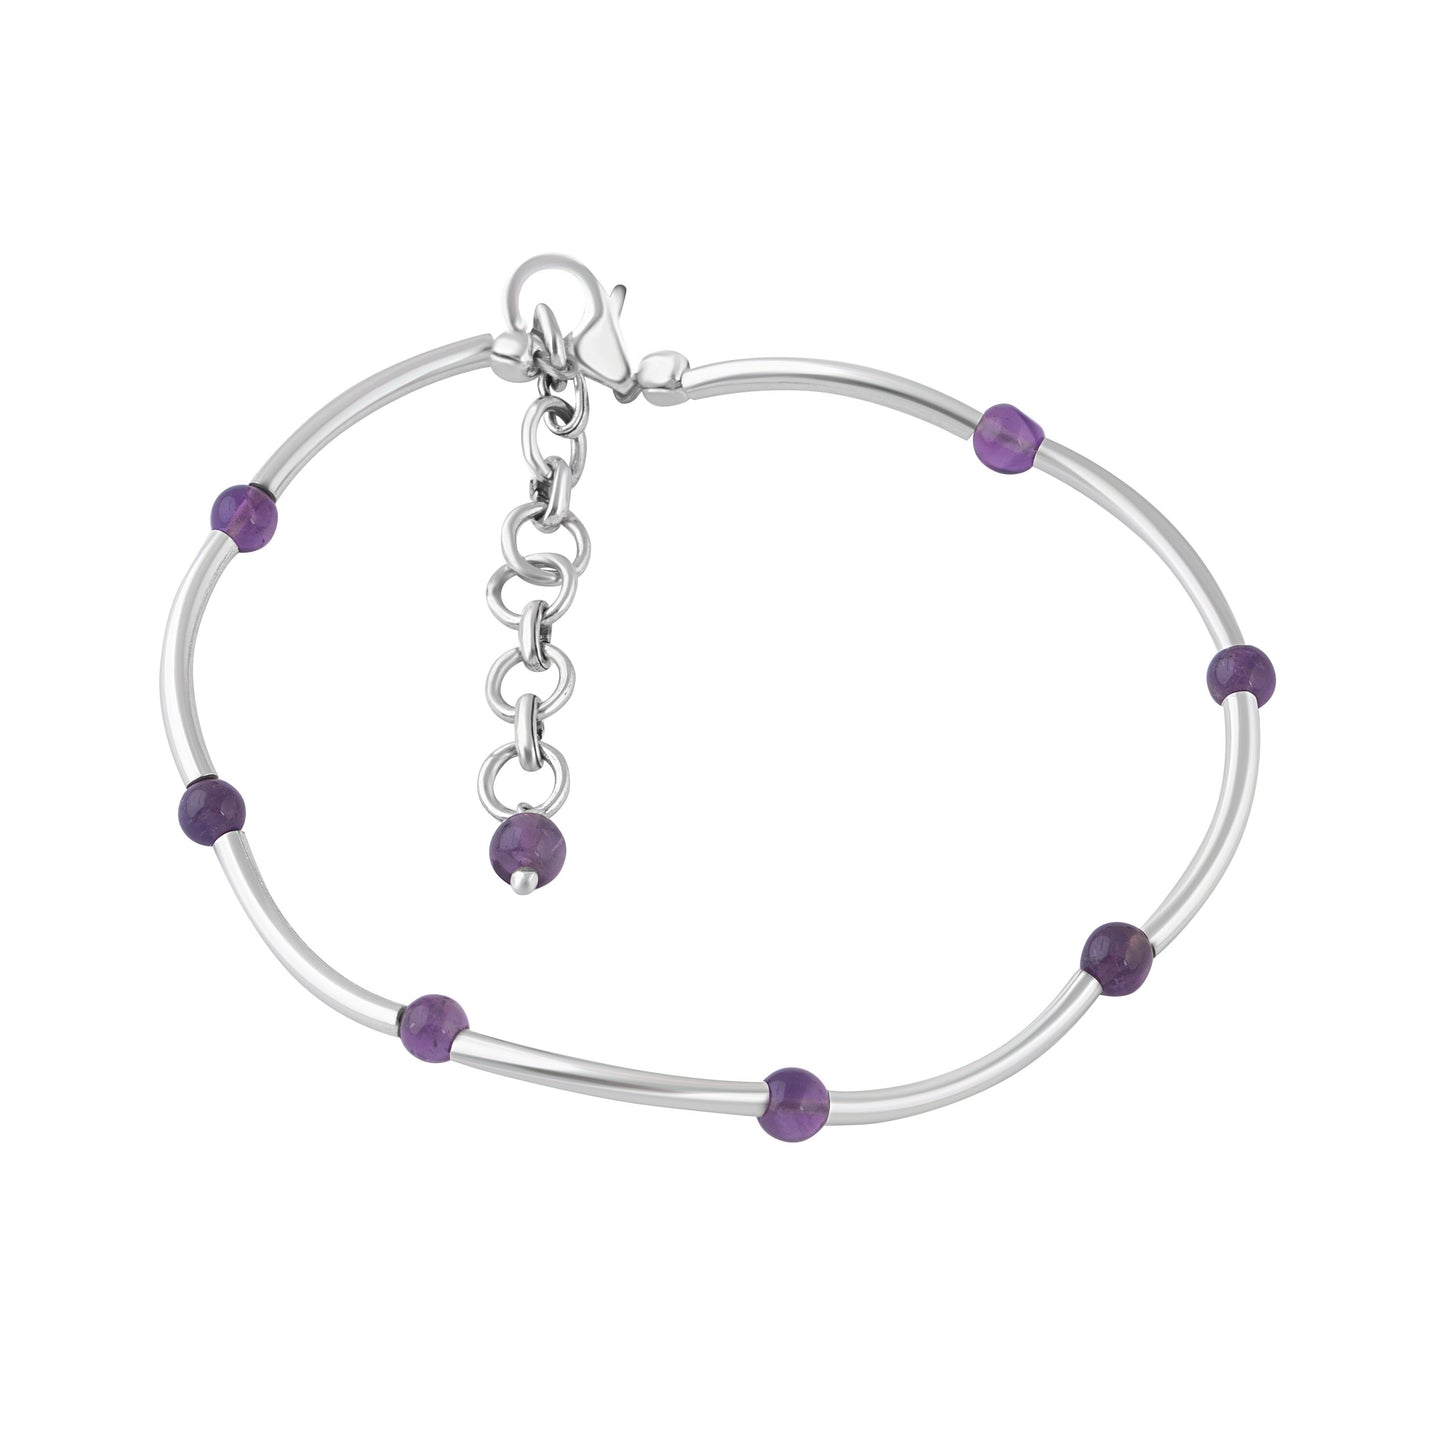 SOLID 925 SILVER tubes Amethyst Gemstones bracelet anklet 7.7", Purple Amethyst Gems 925 Sterling Silver Pipes Bracelet Anklet, Australia, Zorbajewellers